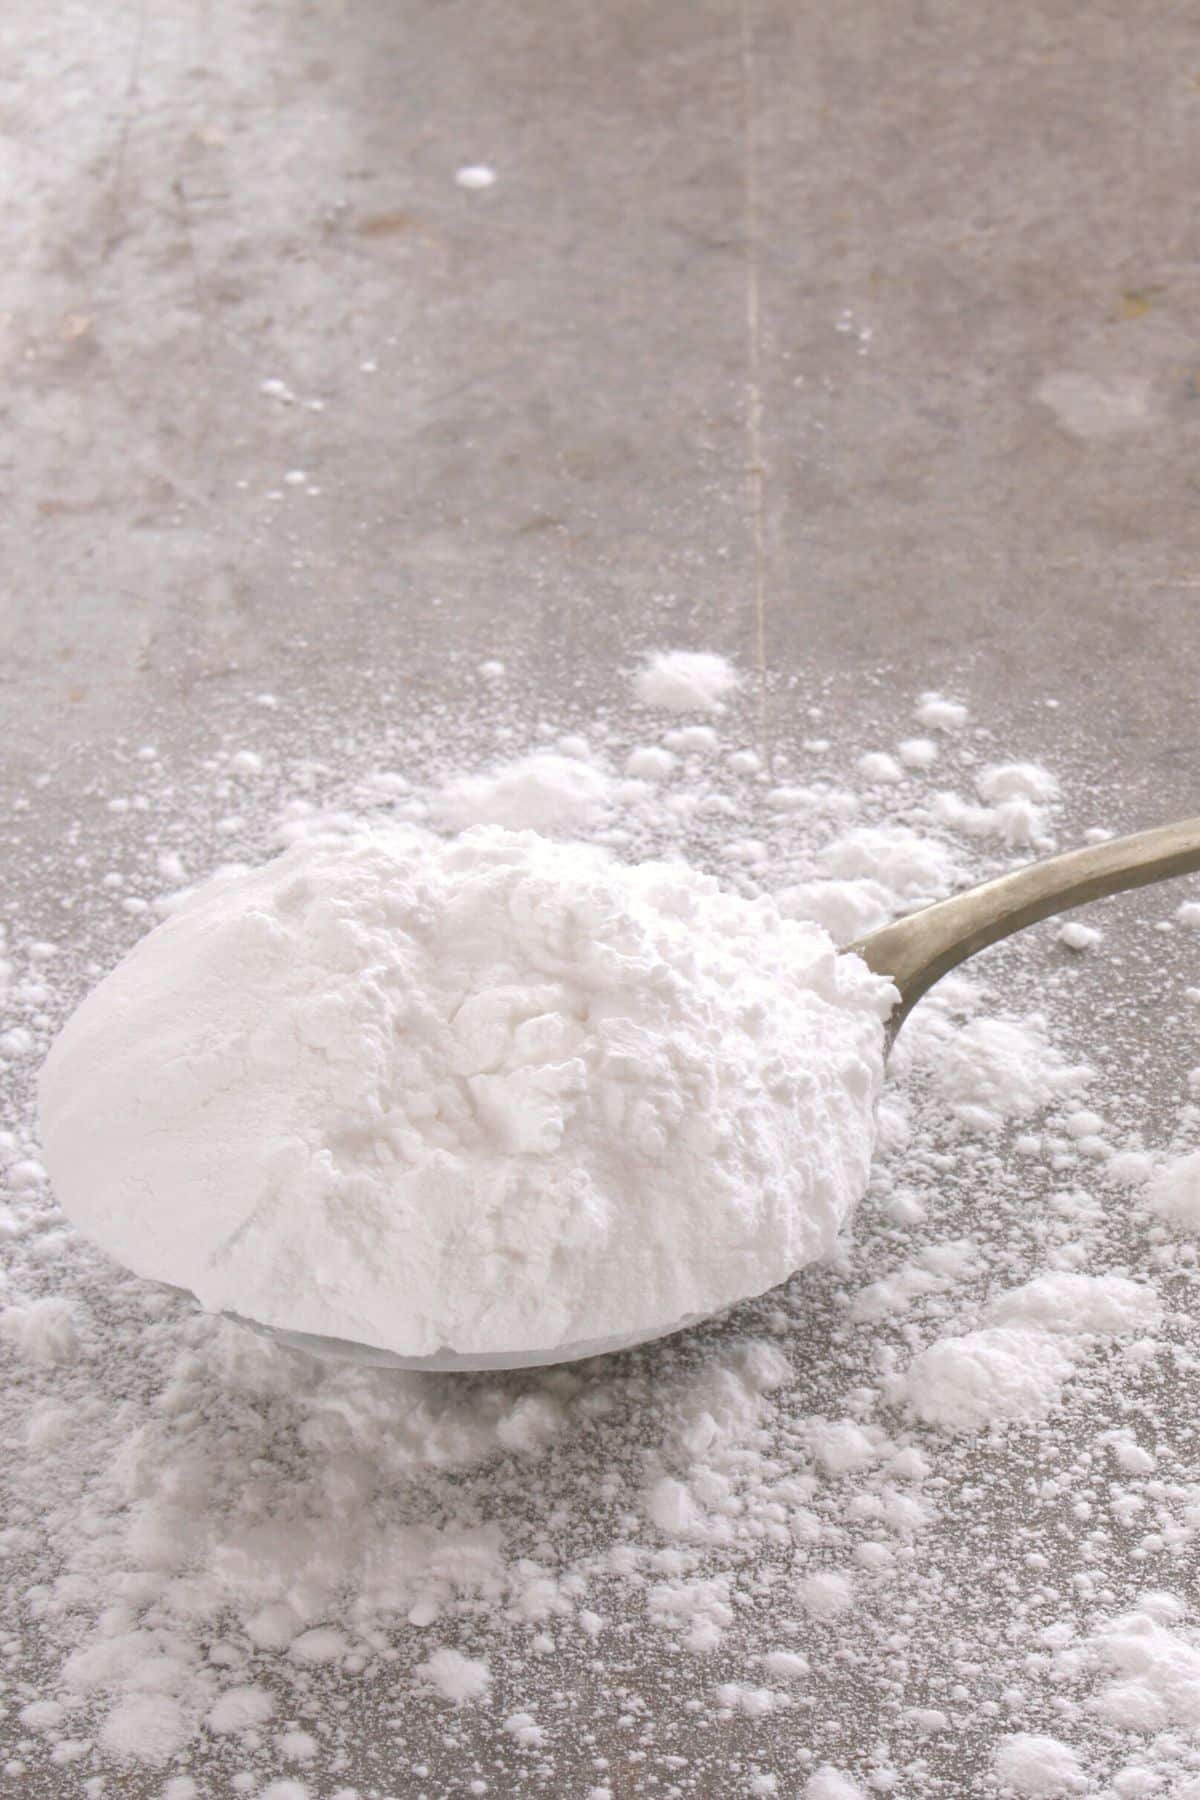 A silver spoon full of powdered sugar.